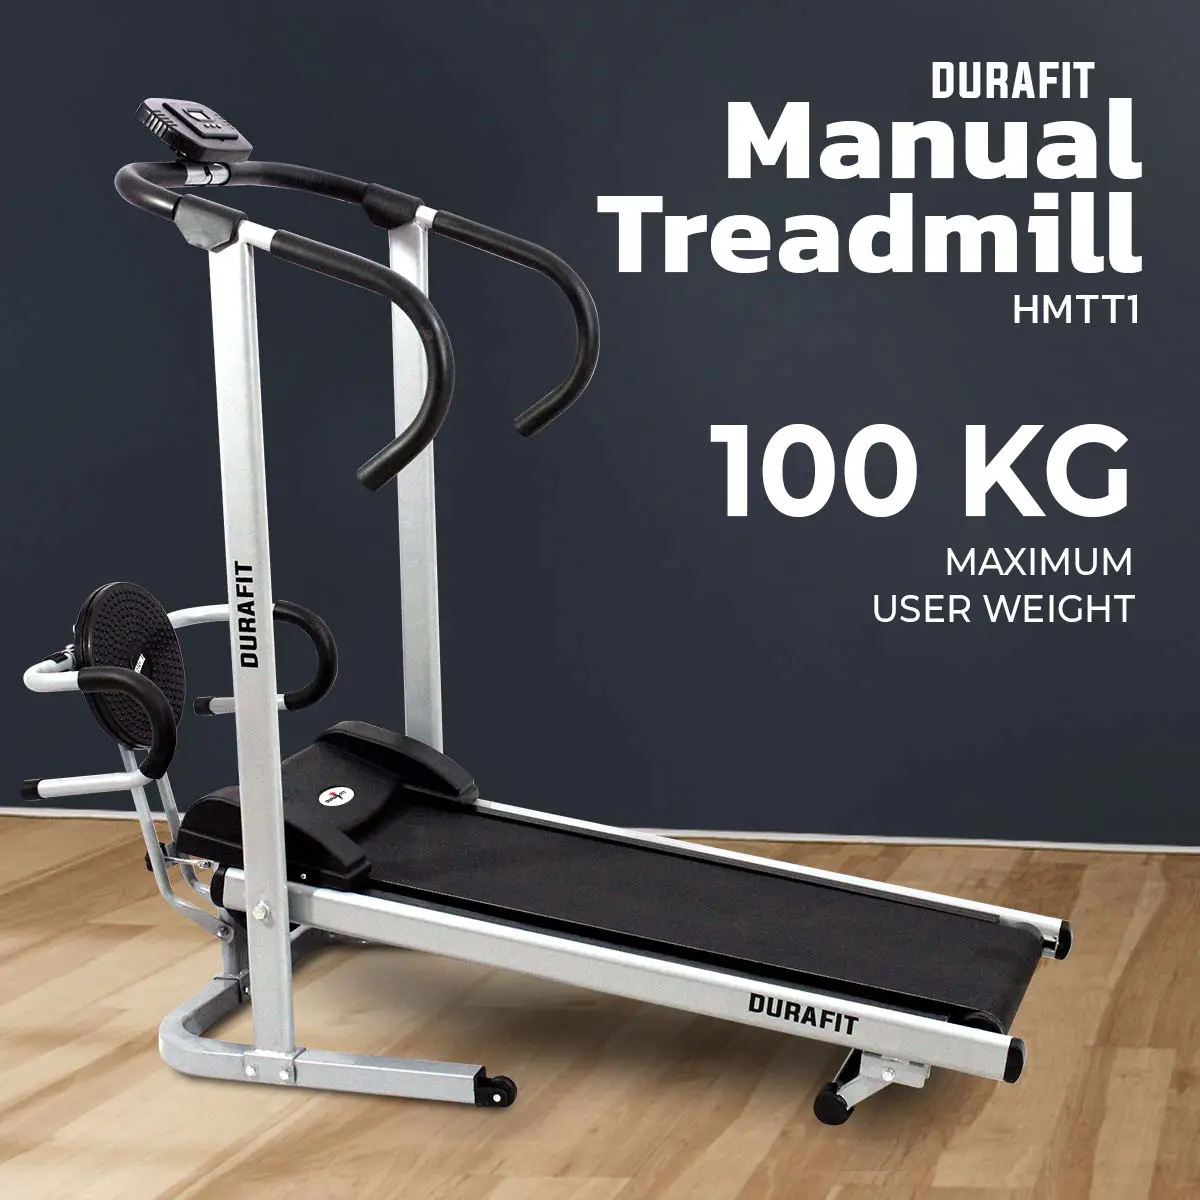 Durafit Manual Treadmill Hmtt1